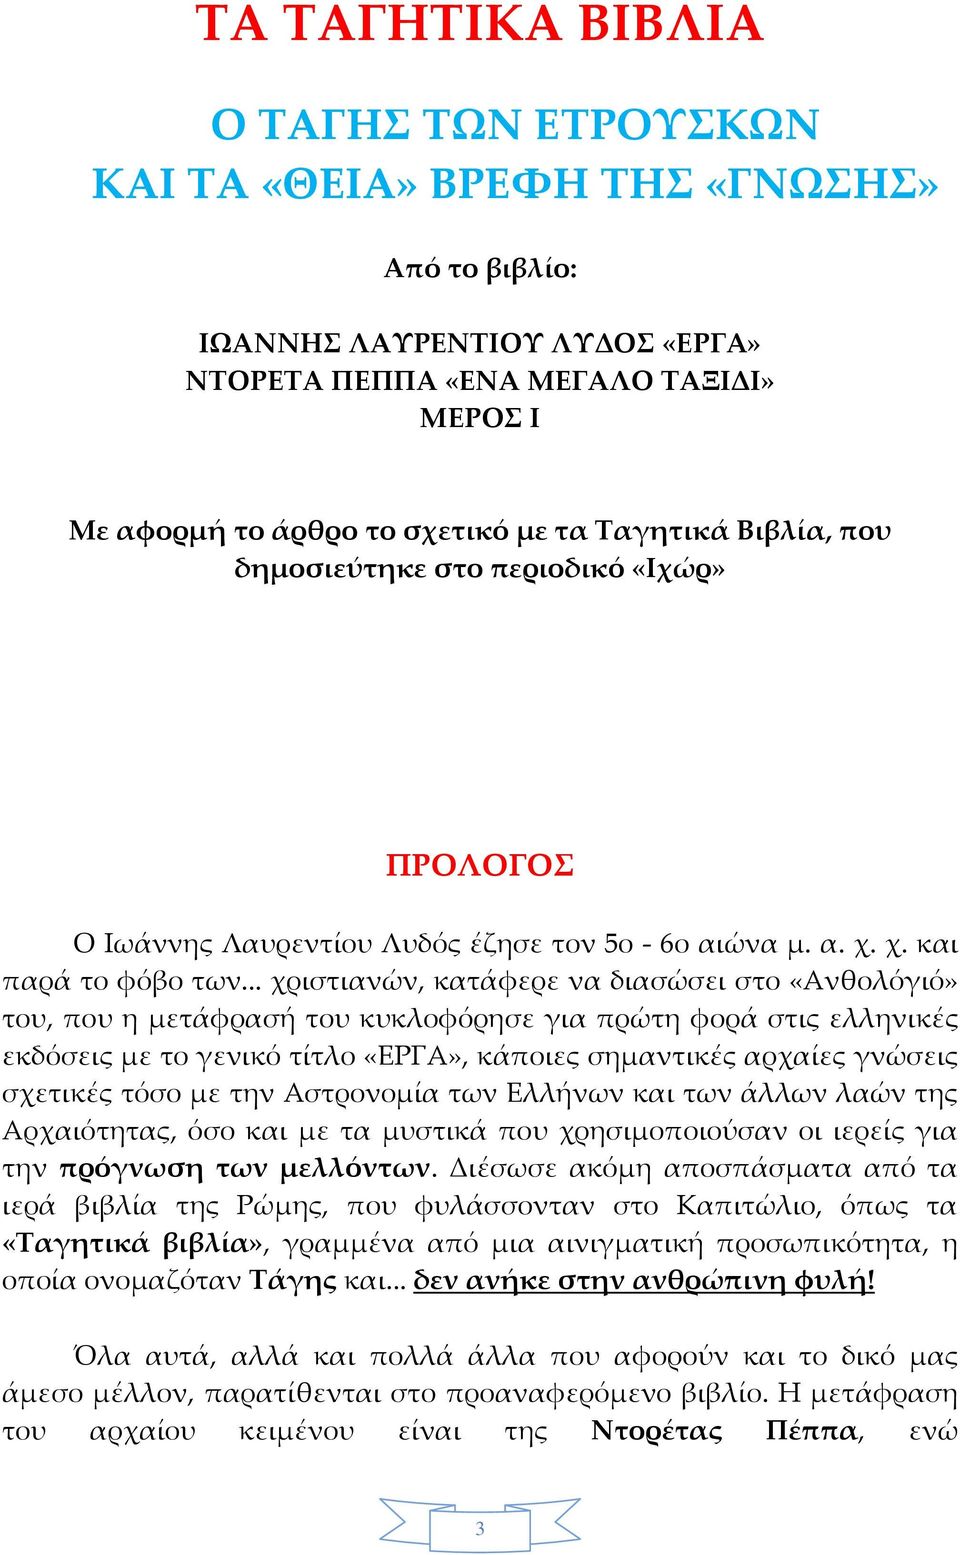 .. χριστιανών, κατάφερε να διασώσει στο «Ανθολόγιό» του, που η μετάφρασή του κυκλοφόρησε για πρώτη φορά στις ελληνικές εκδόσεις με το γενικό τίτλο «ΕΡΓΑ», κάποιες σημαντικές αρχαίες γνώσεις σχετικές